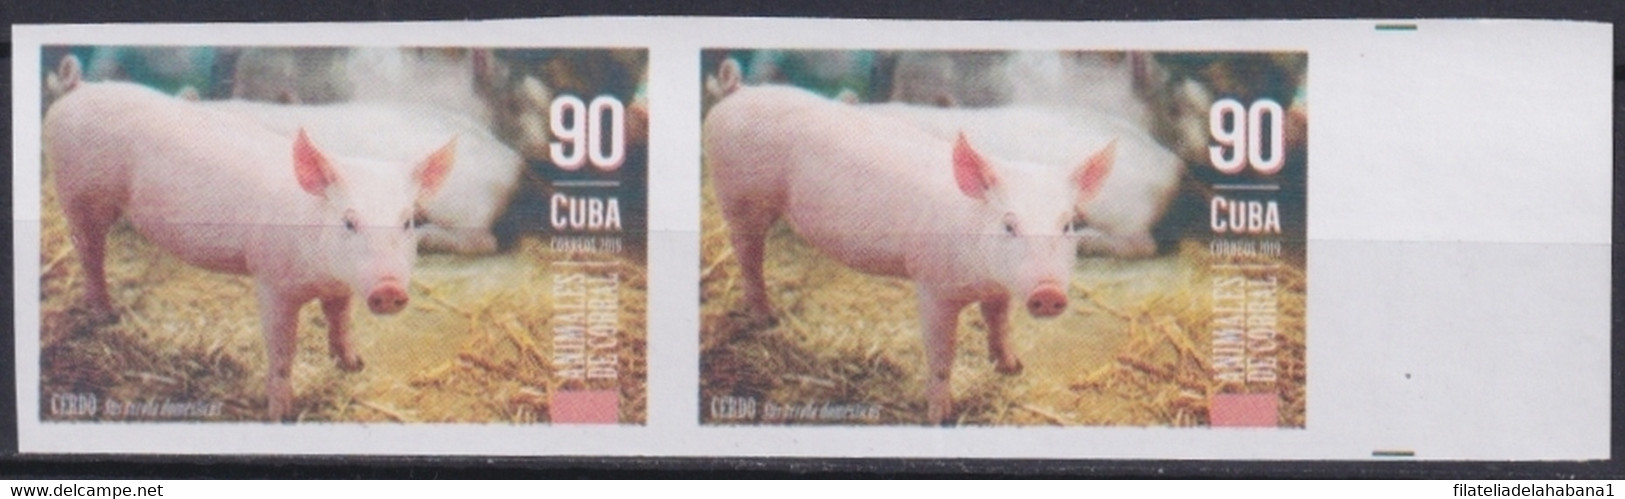 2019.191 CUBA MNH 2019 IMPERFORATED PROOF 90c ANIMALES DE CORRAL CERDOS PIG. - Sin Dentar, Pruebas De Impresión Y Variedades